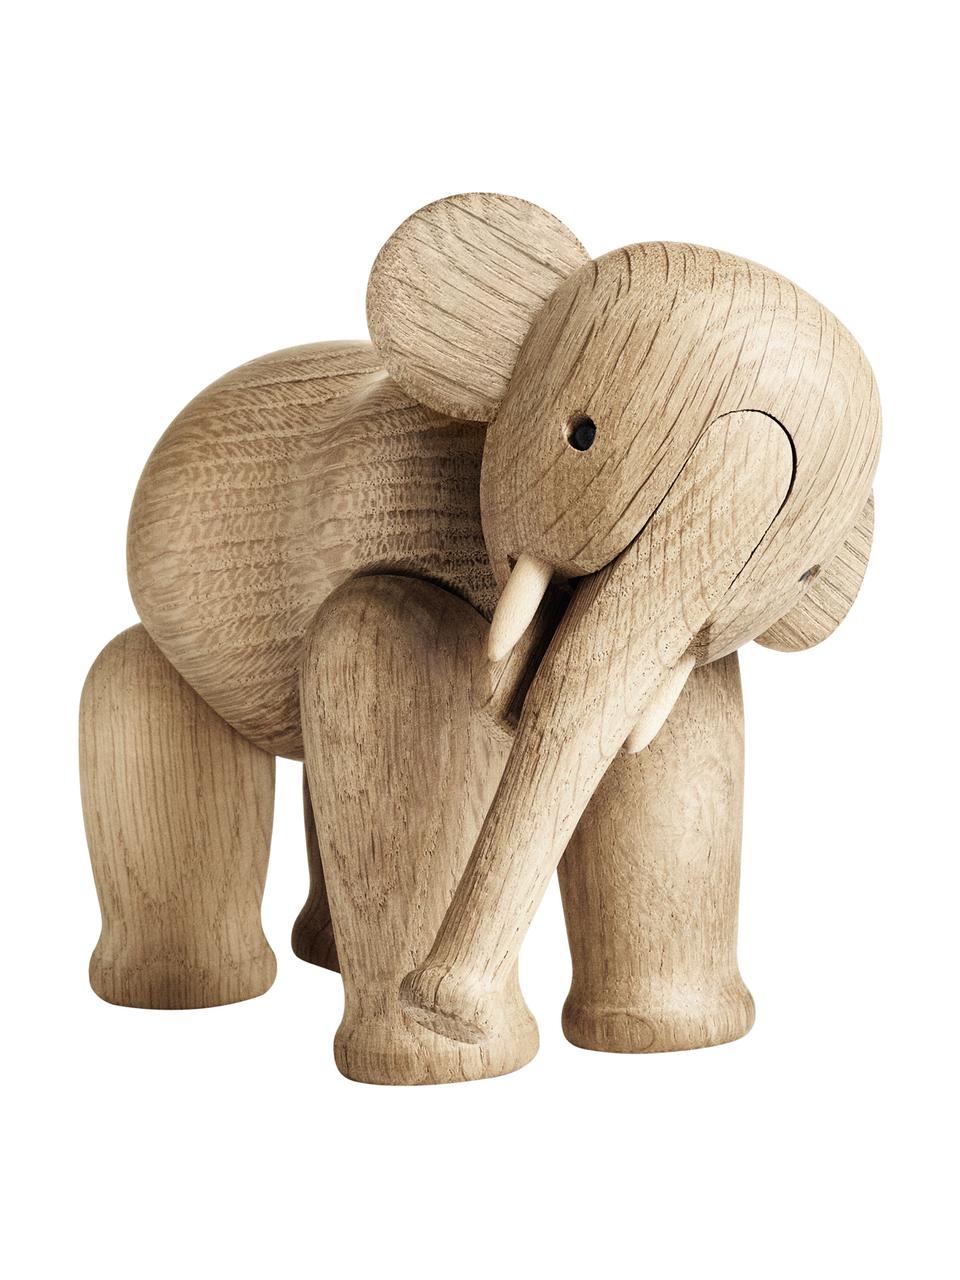 Dekoracja z drewna dębowego Elephant, Drewno dębowe, lakierowane, Drewno dębowe, S 17 x W 13 cm